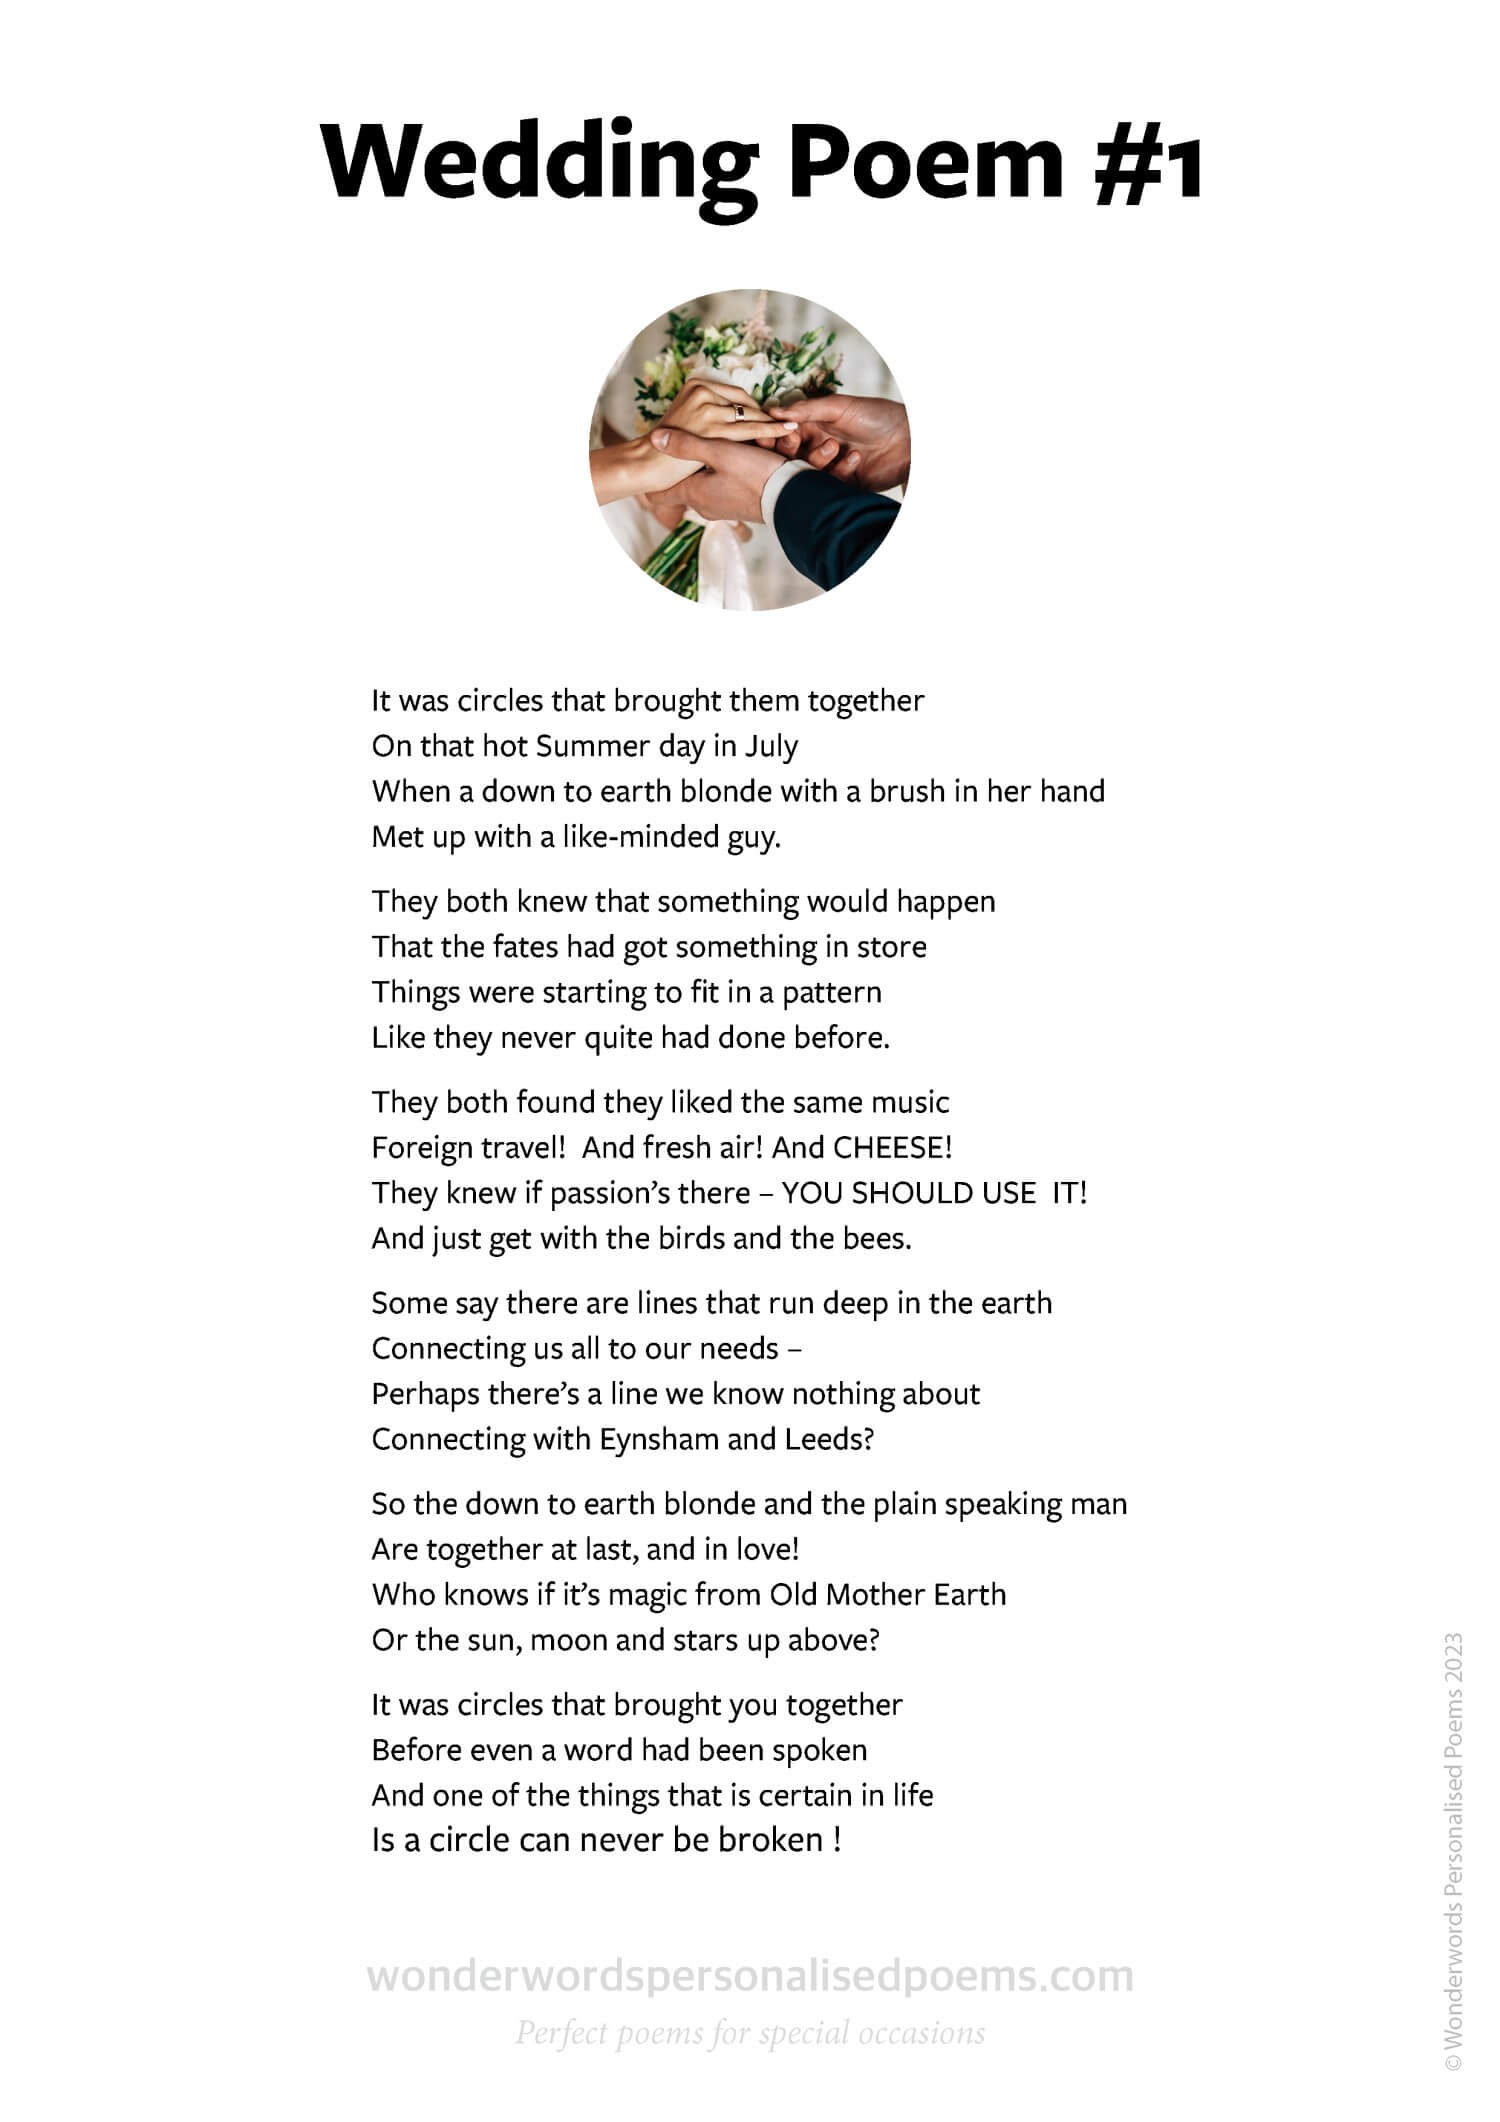 A sample wedding poem from Wonderwords Personalised Poems